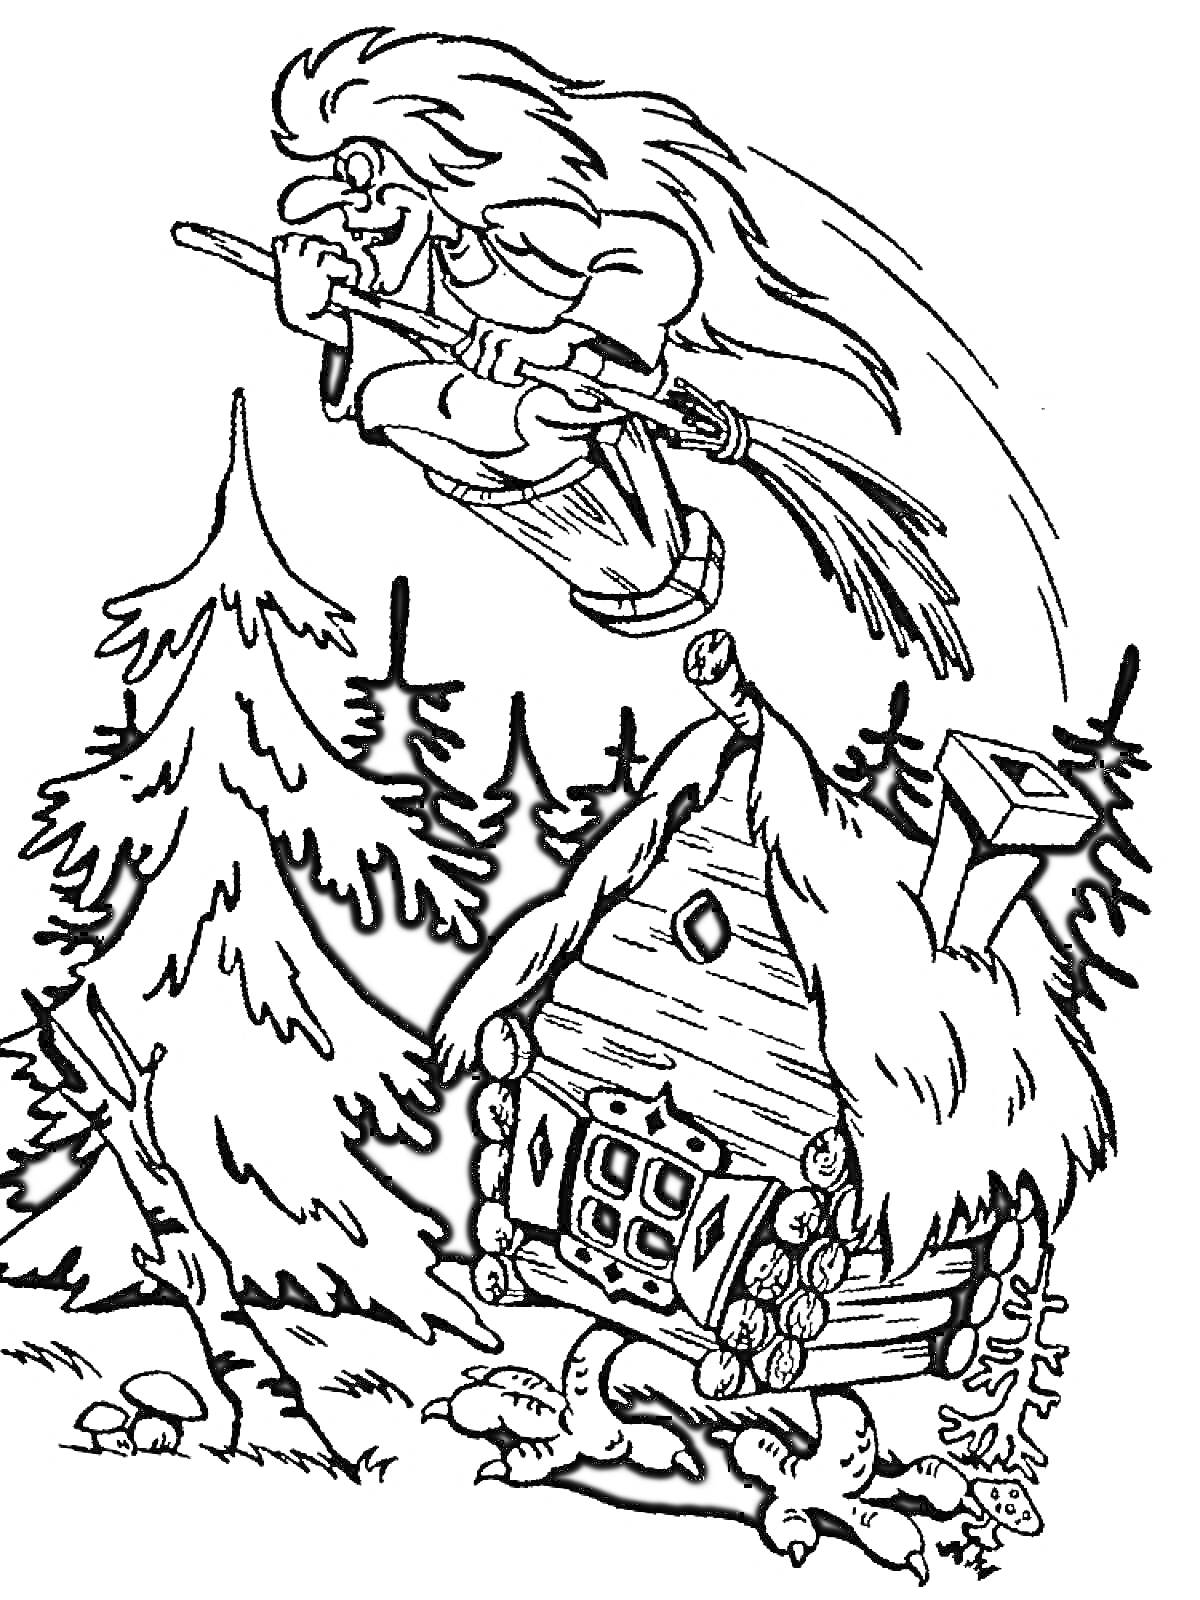 Баба Яга на метле и избушка на курьих ножках в лесу